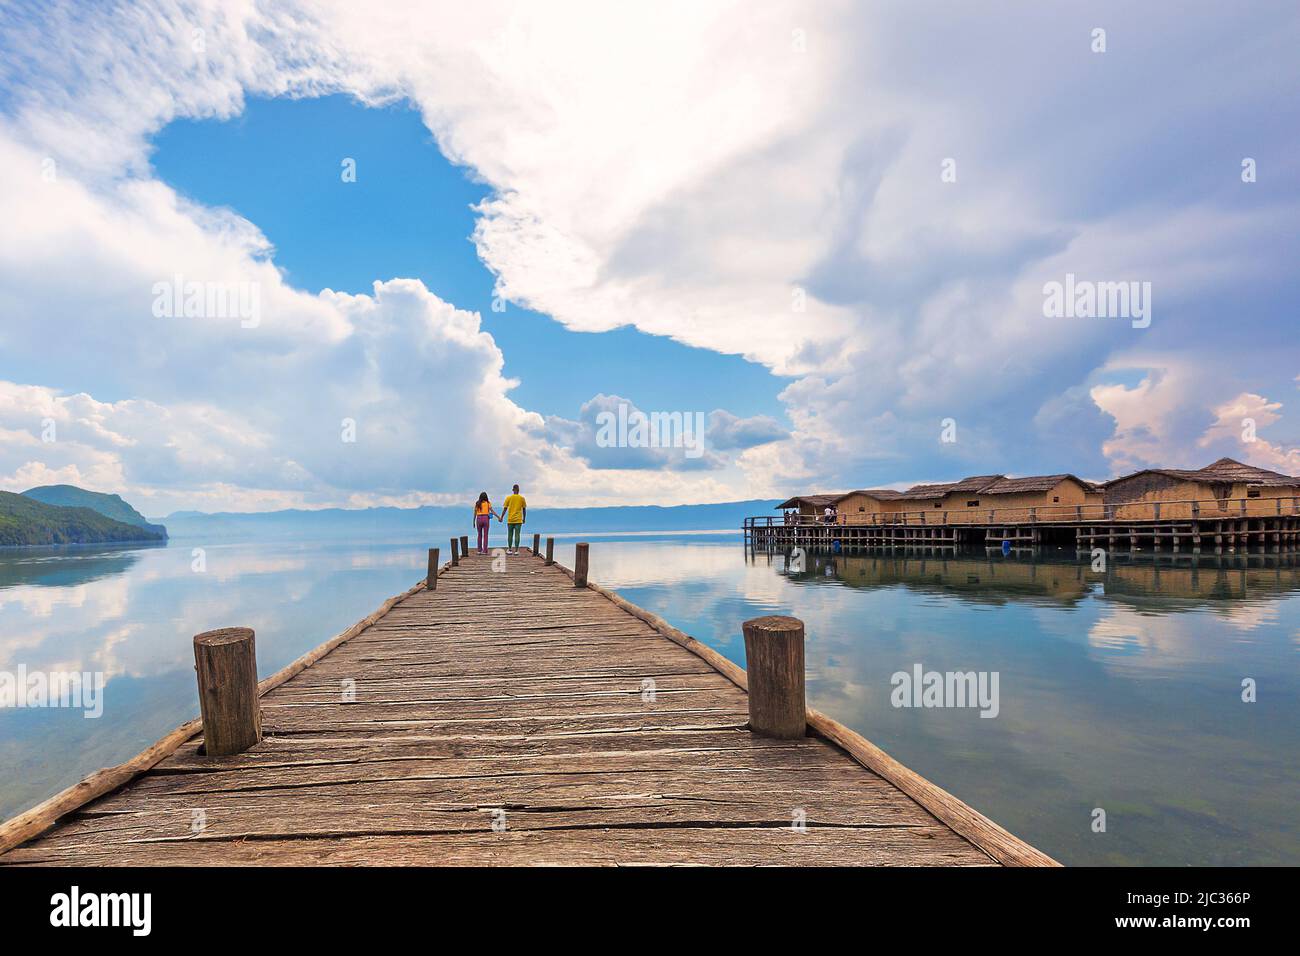 Jetée en bois et paysage nuageux avec un couple à l'extrémité du quai dans la baie connue sous le nom de baie d'os dans le lac Ohrid, Macédoine. Banque D'Images